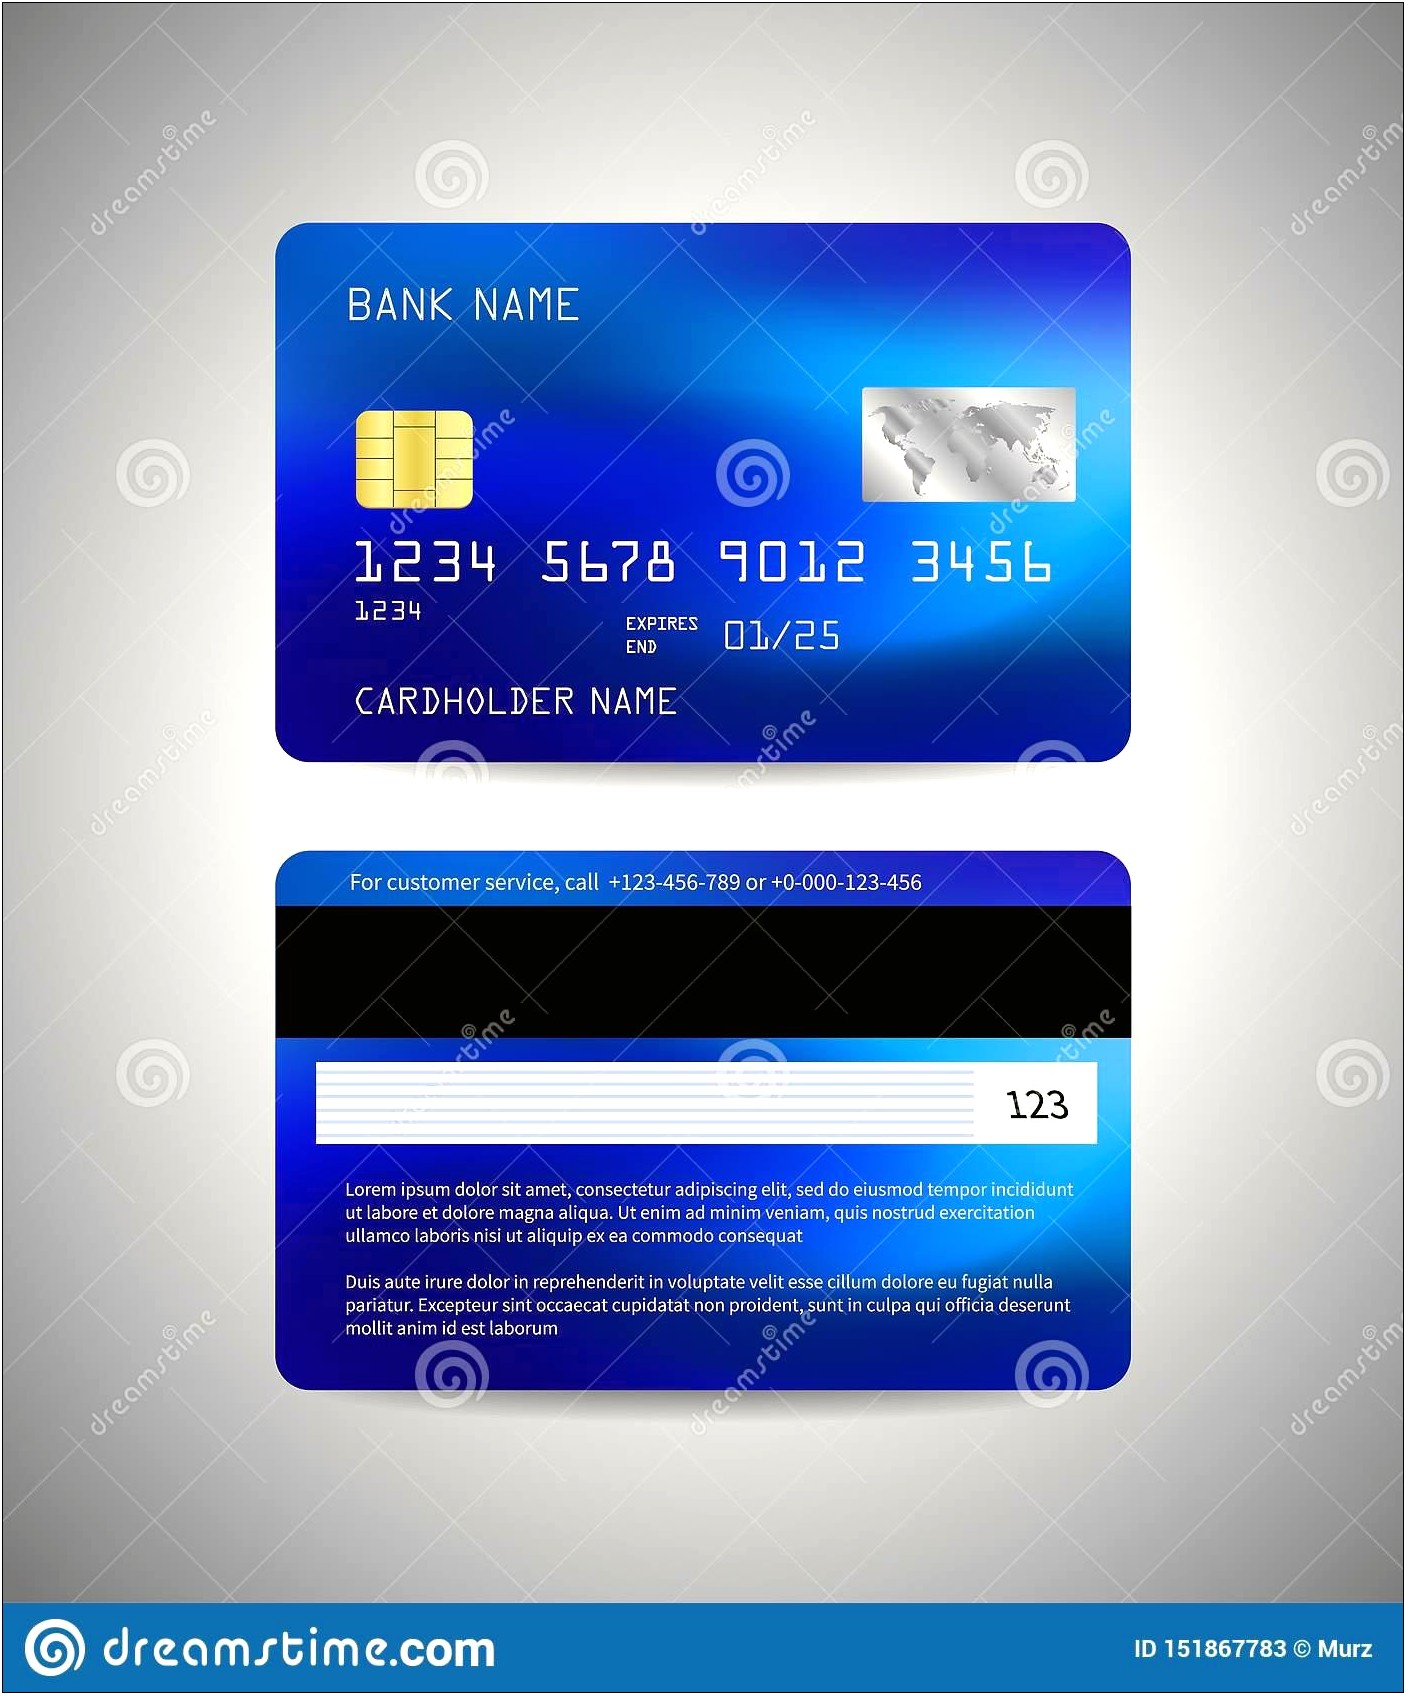 Visa Credit Card Template Vector Download